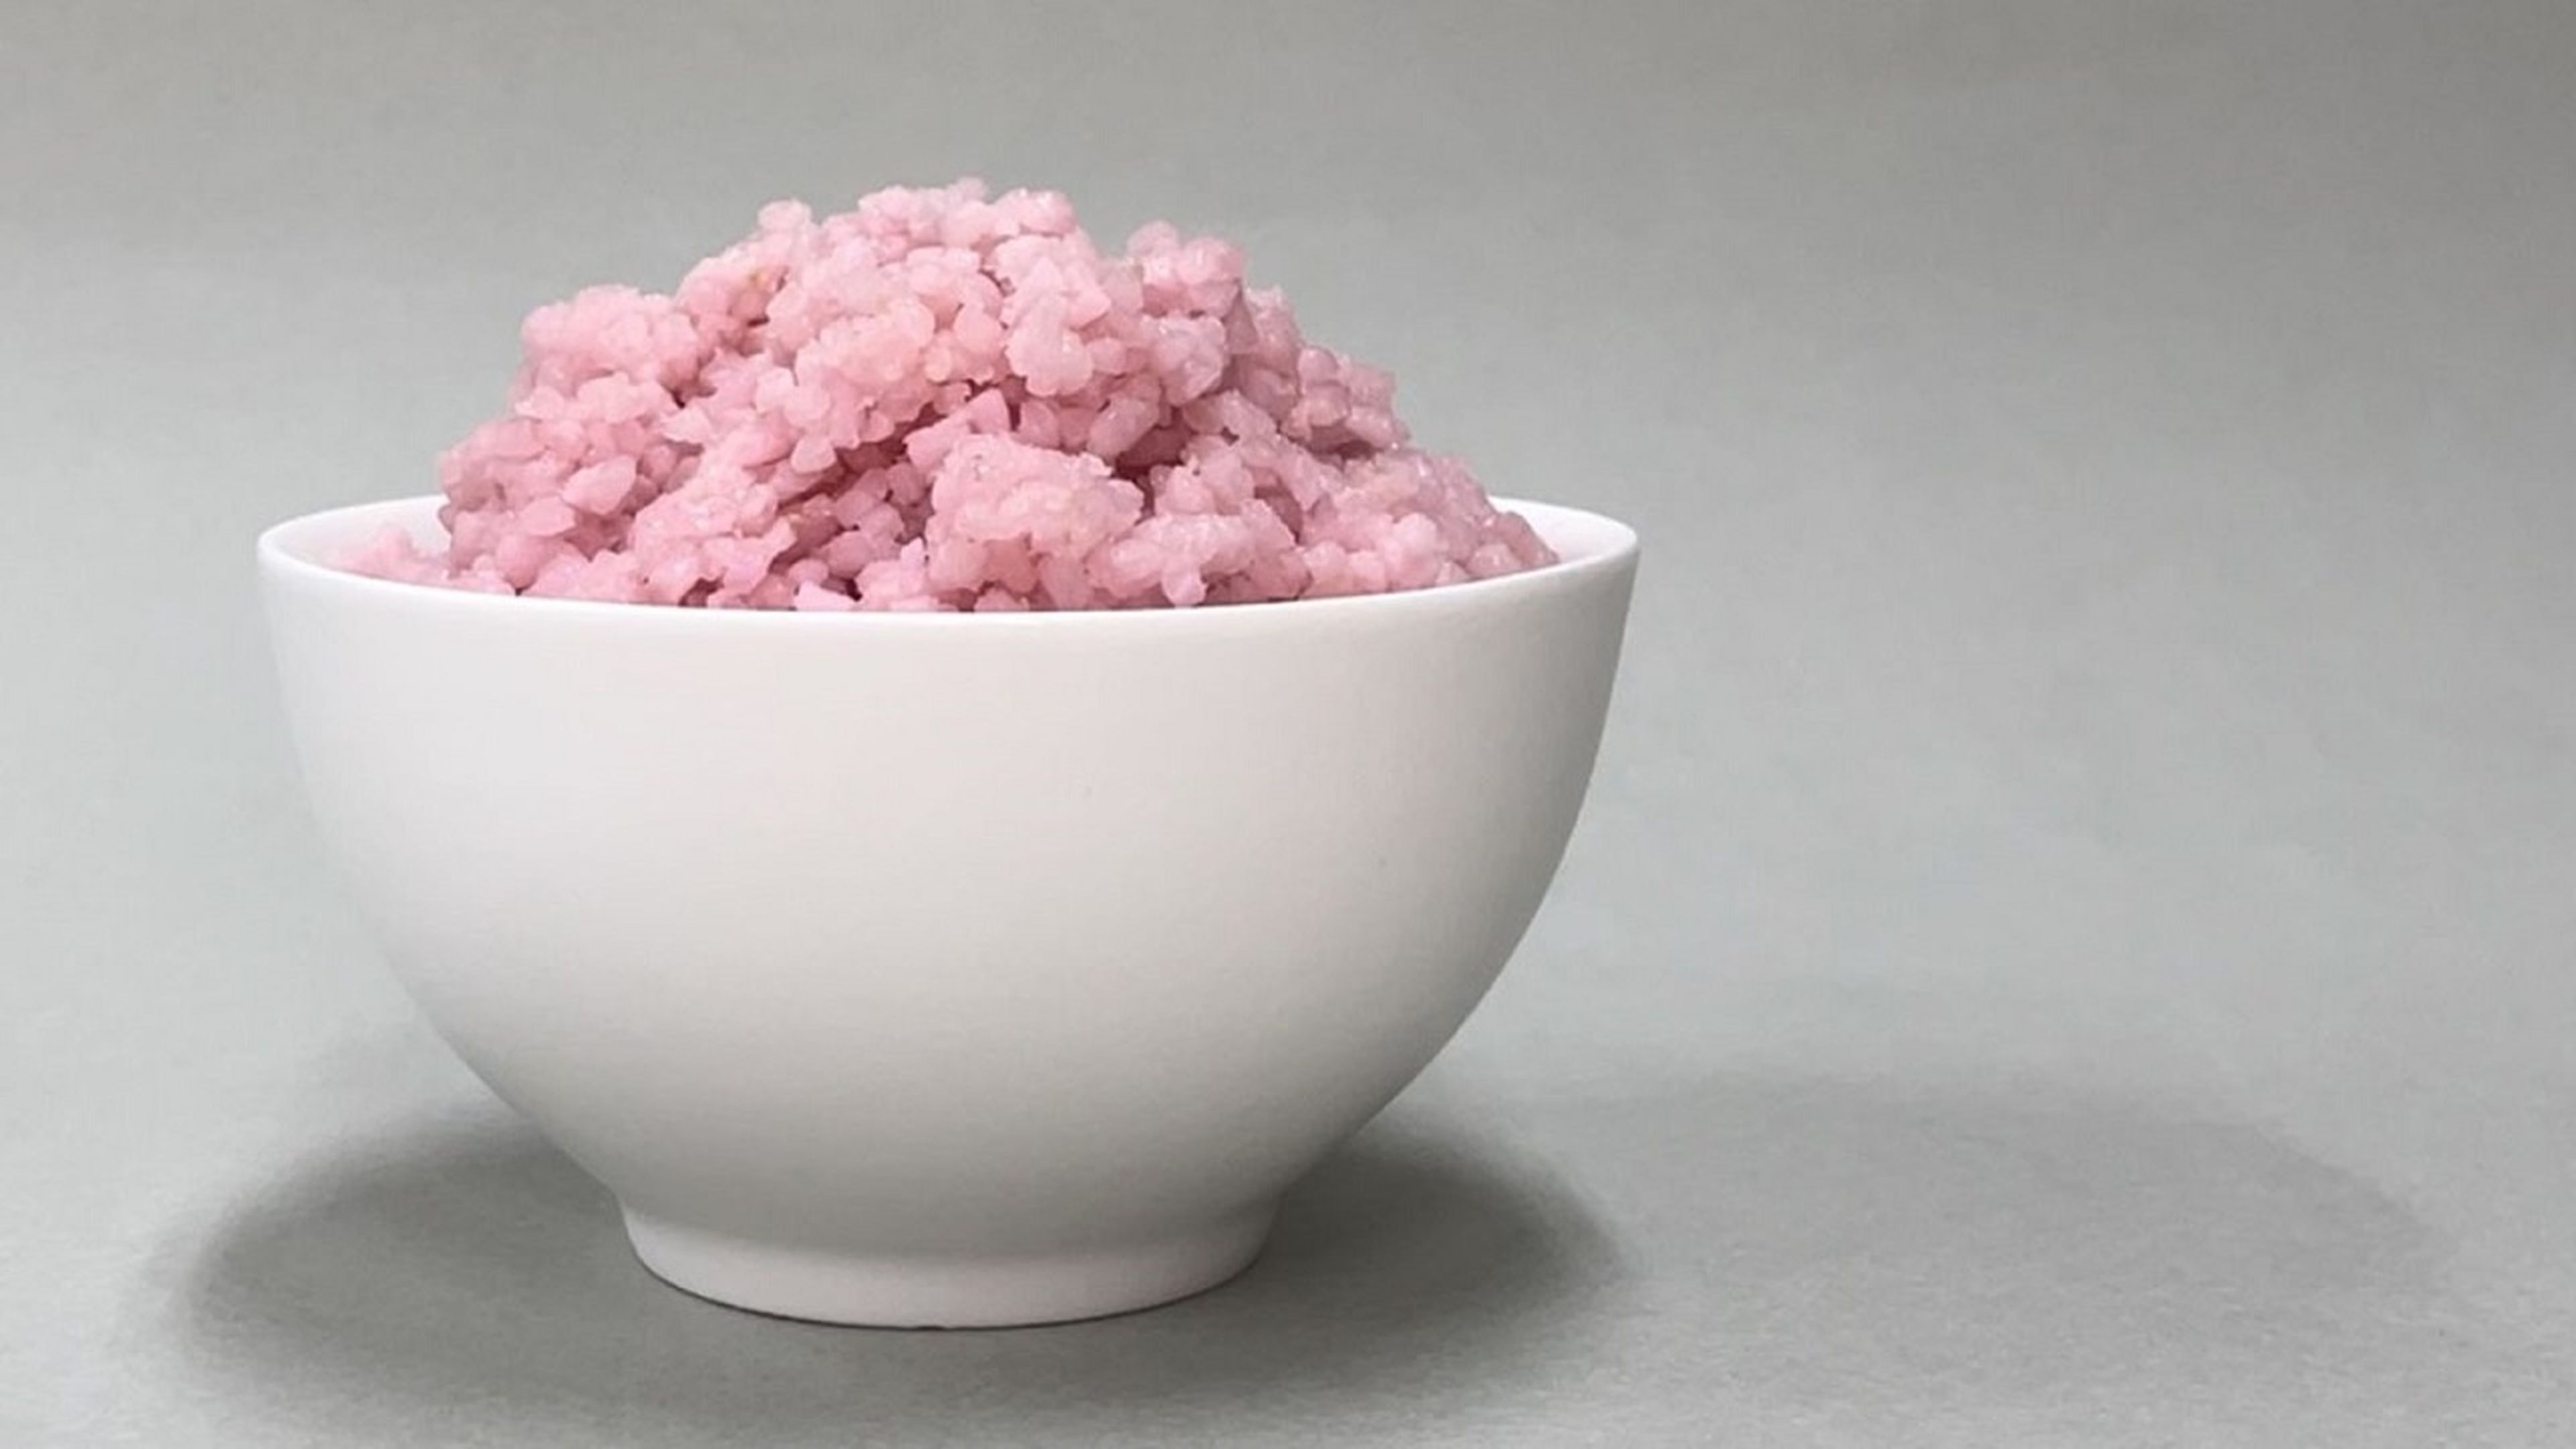 Científicos coreanos crean el arroz con proteínas que podría sustituir a la carne en el futuro